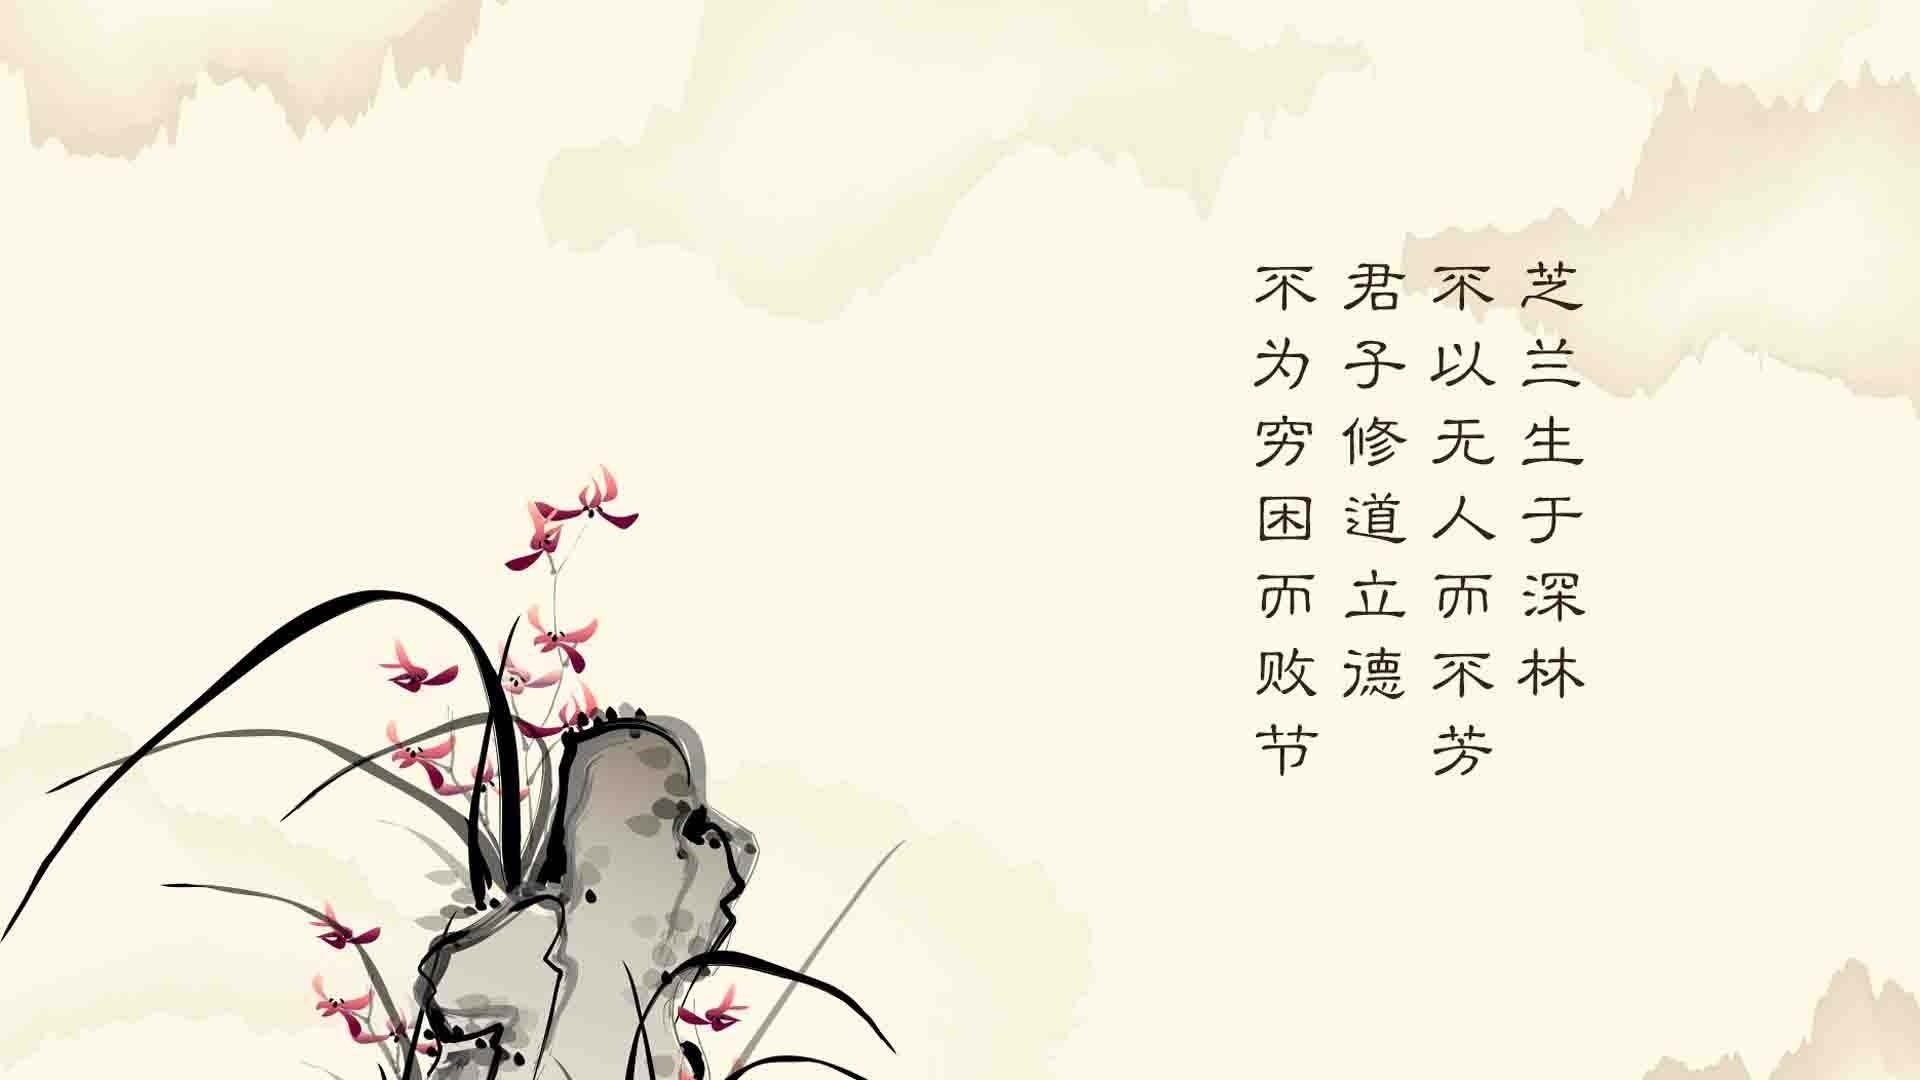 手机壁纸 古风 诗经 爱情 文字 中国风 壁纸… - 高清图片，堆糖，美图壁纸兴趣社区